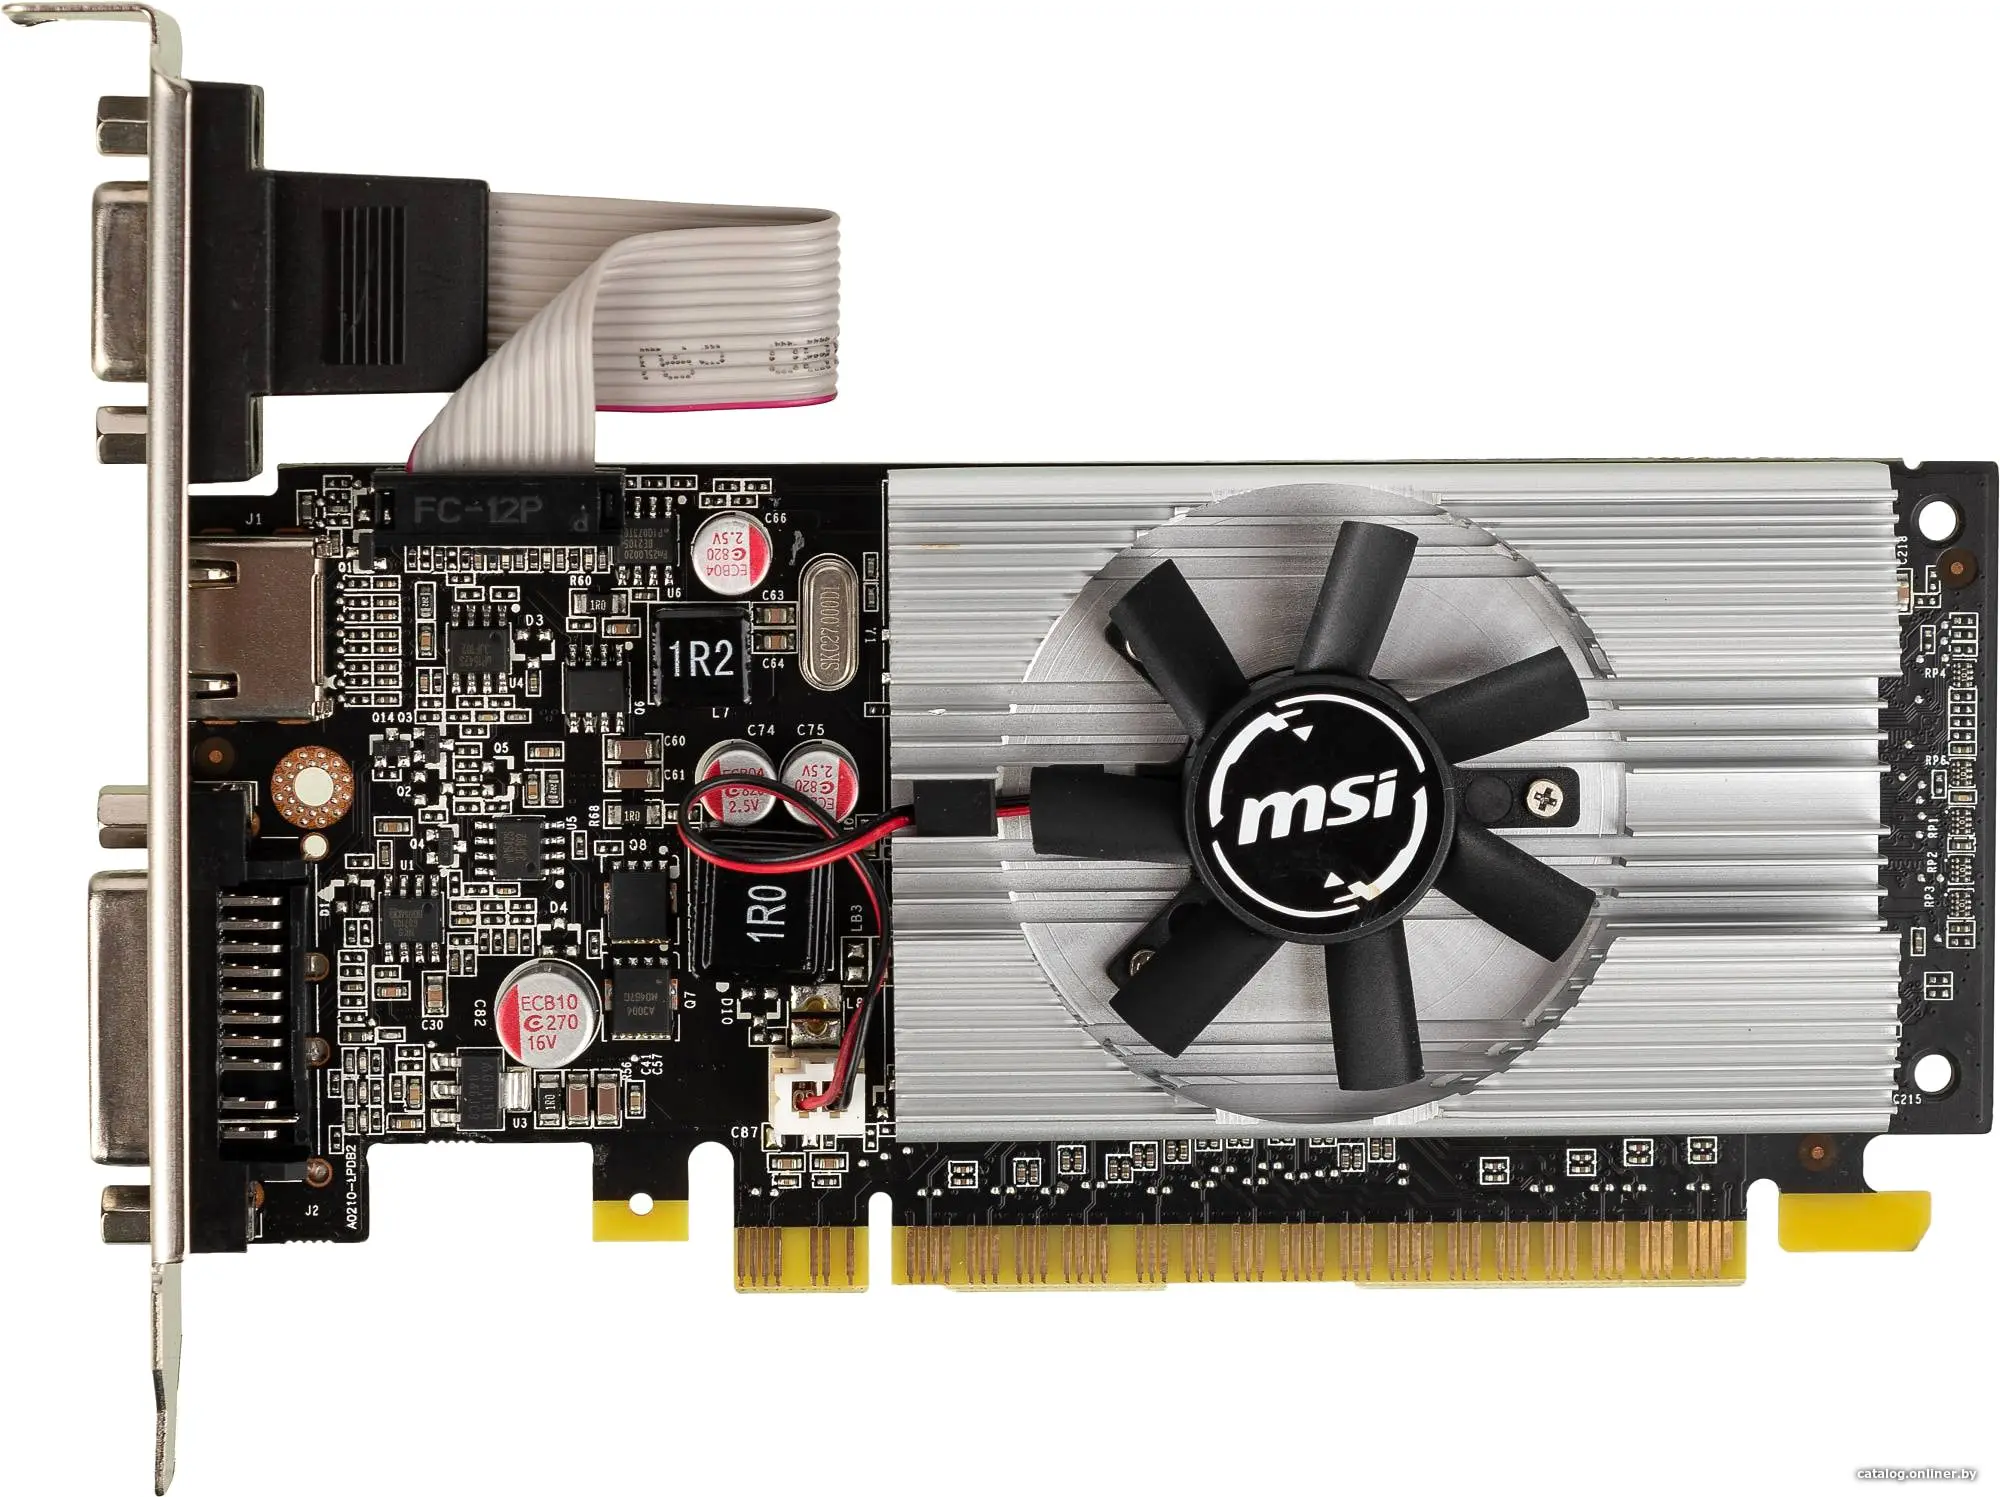 Купить Видеокарта MSI PCI-E N210-1GD3/LP NVIDIA GeForce 210 1024Mb 64 DDR3 460/800 DVIx1/CRTx1 Ret, цена, опт и розница